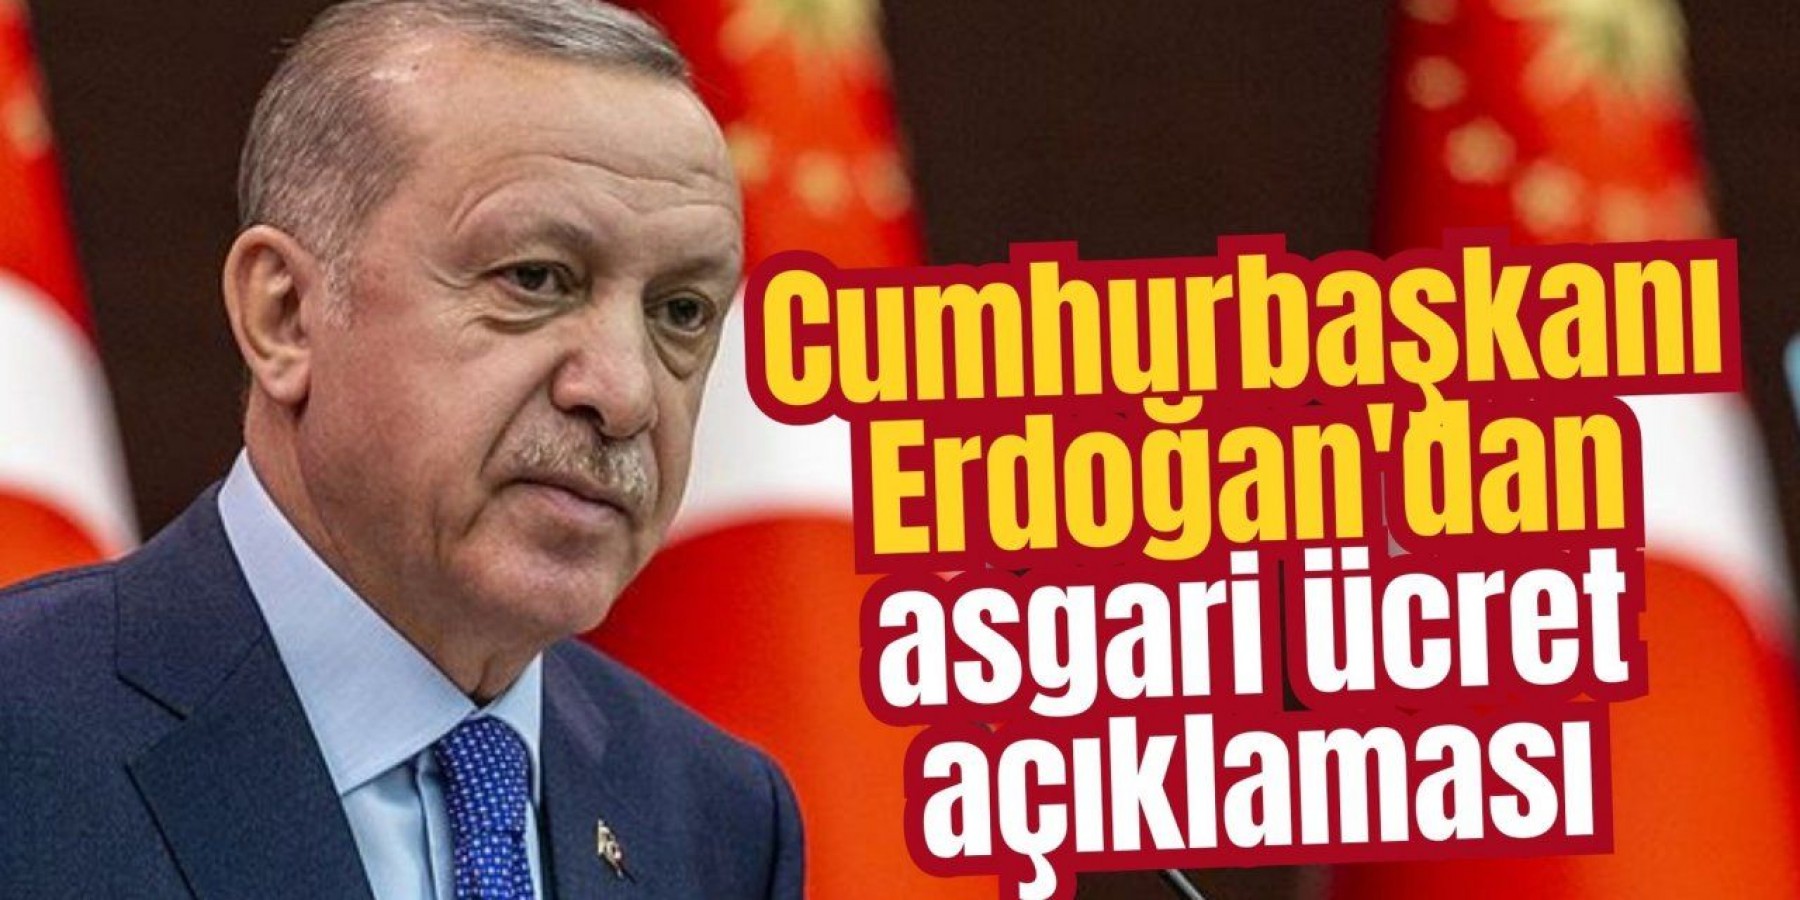 Erdoğan'dan asgari ücret yorumu: “Tek zamla…”